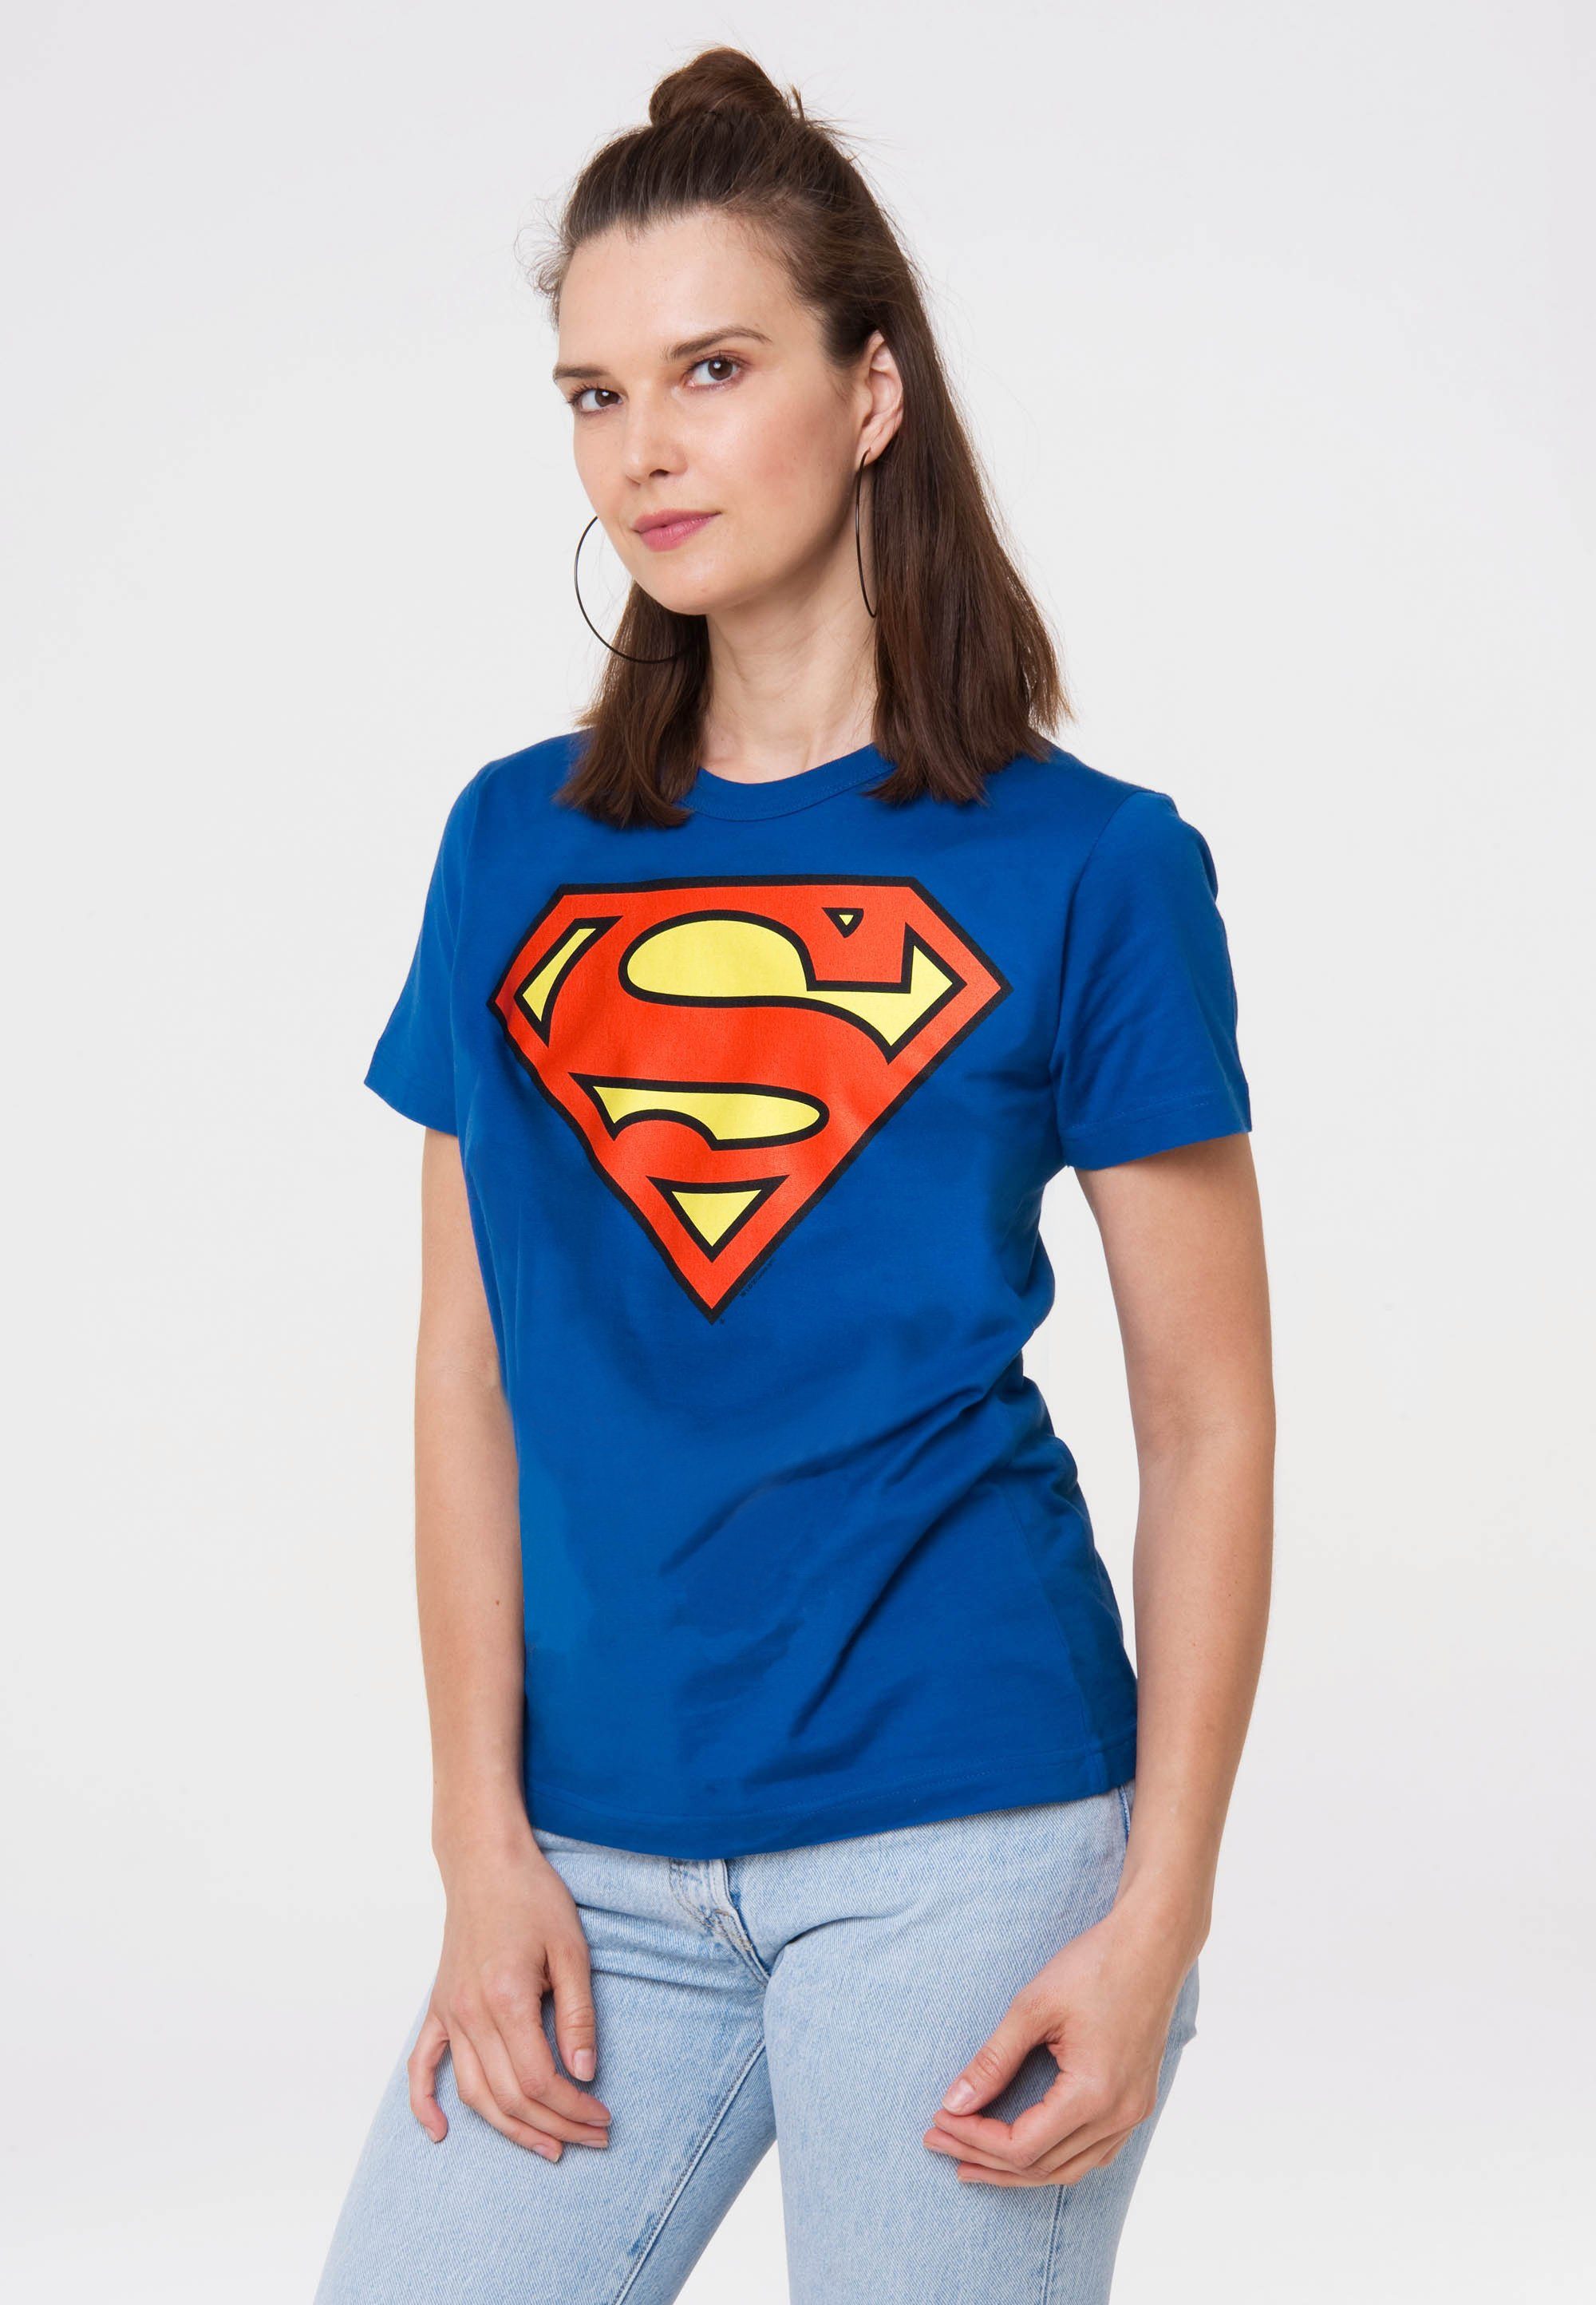 LOGOSHIRT T-Shirt Superman Logo mit trendigem Superhelden-Print,  Aufwendiger Siebdruck mit Superman-Logo als Highlight